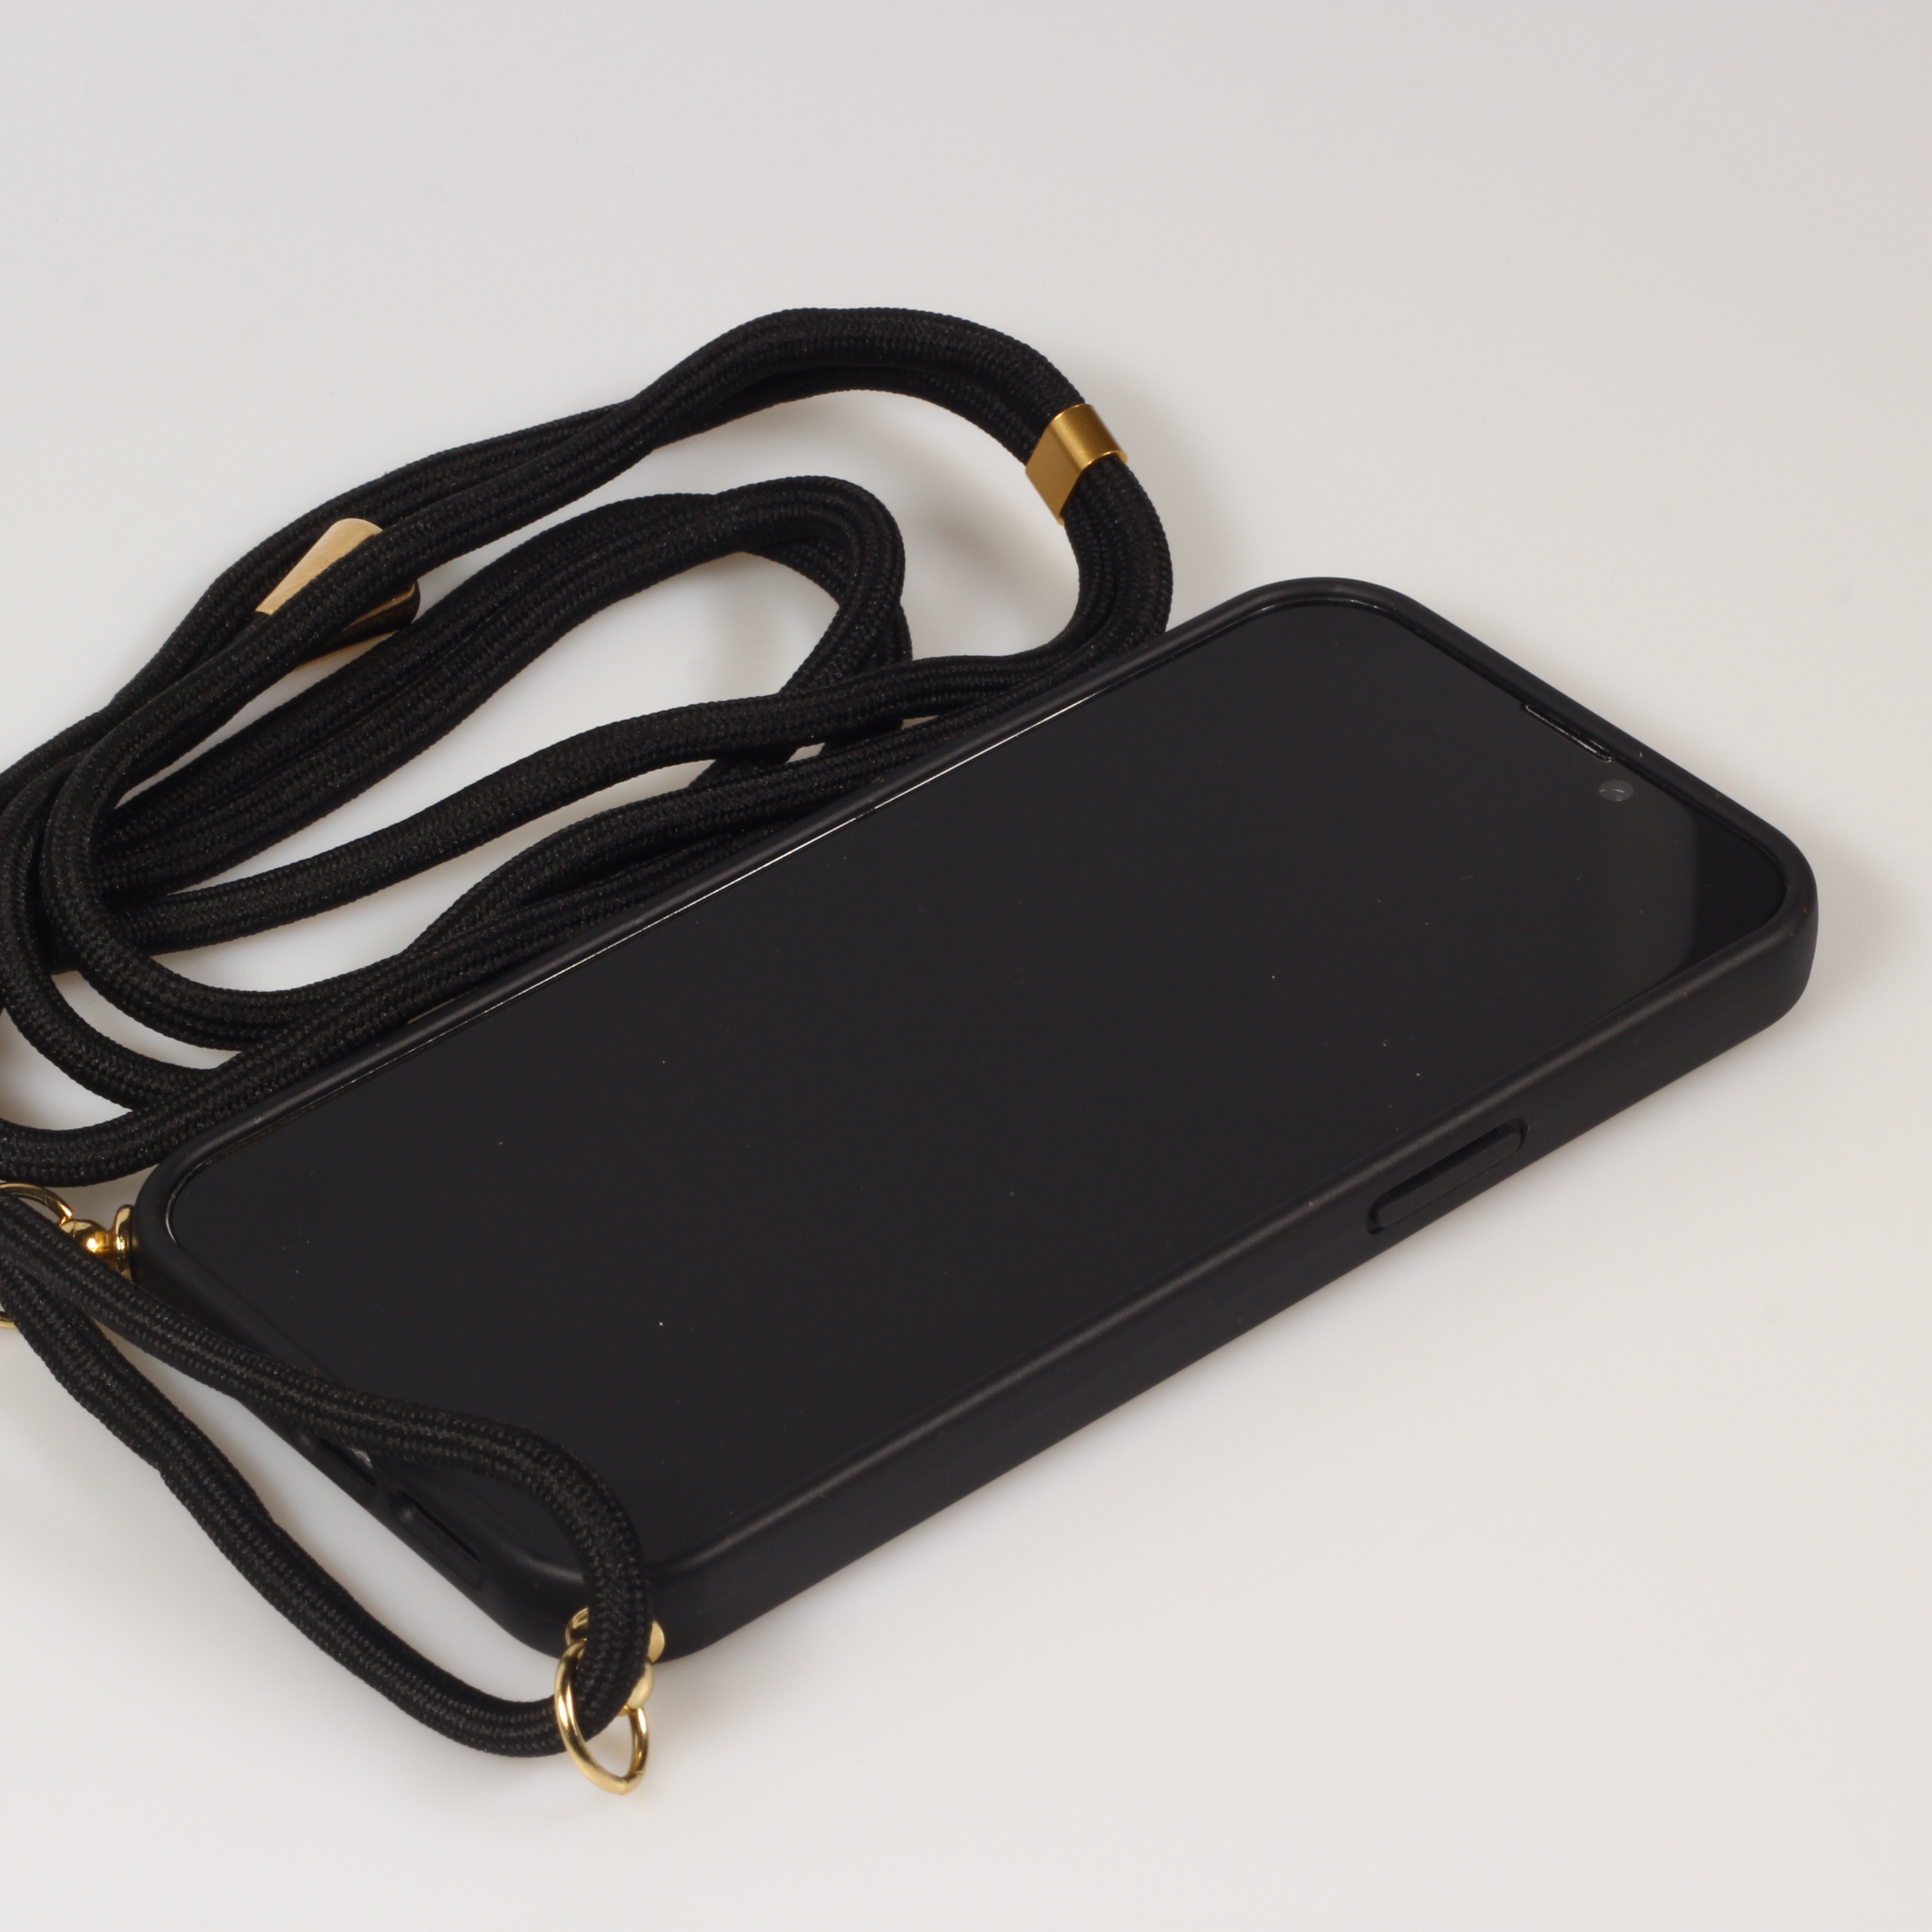 Housse de protection avec cordon pour iPhone 14 Pro Max noir